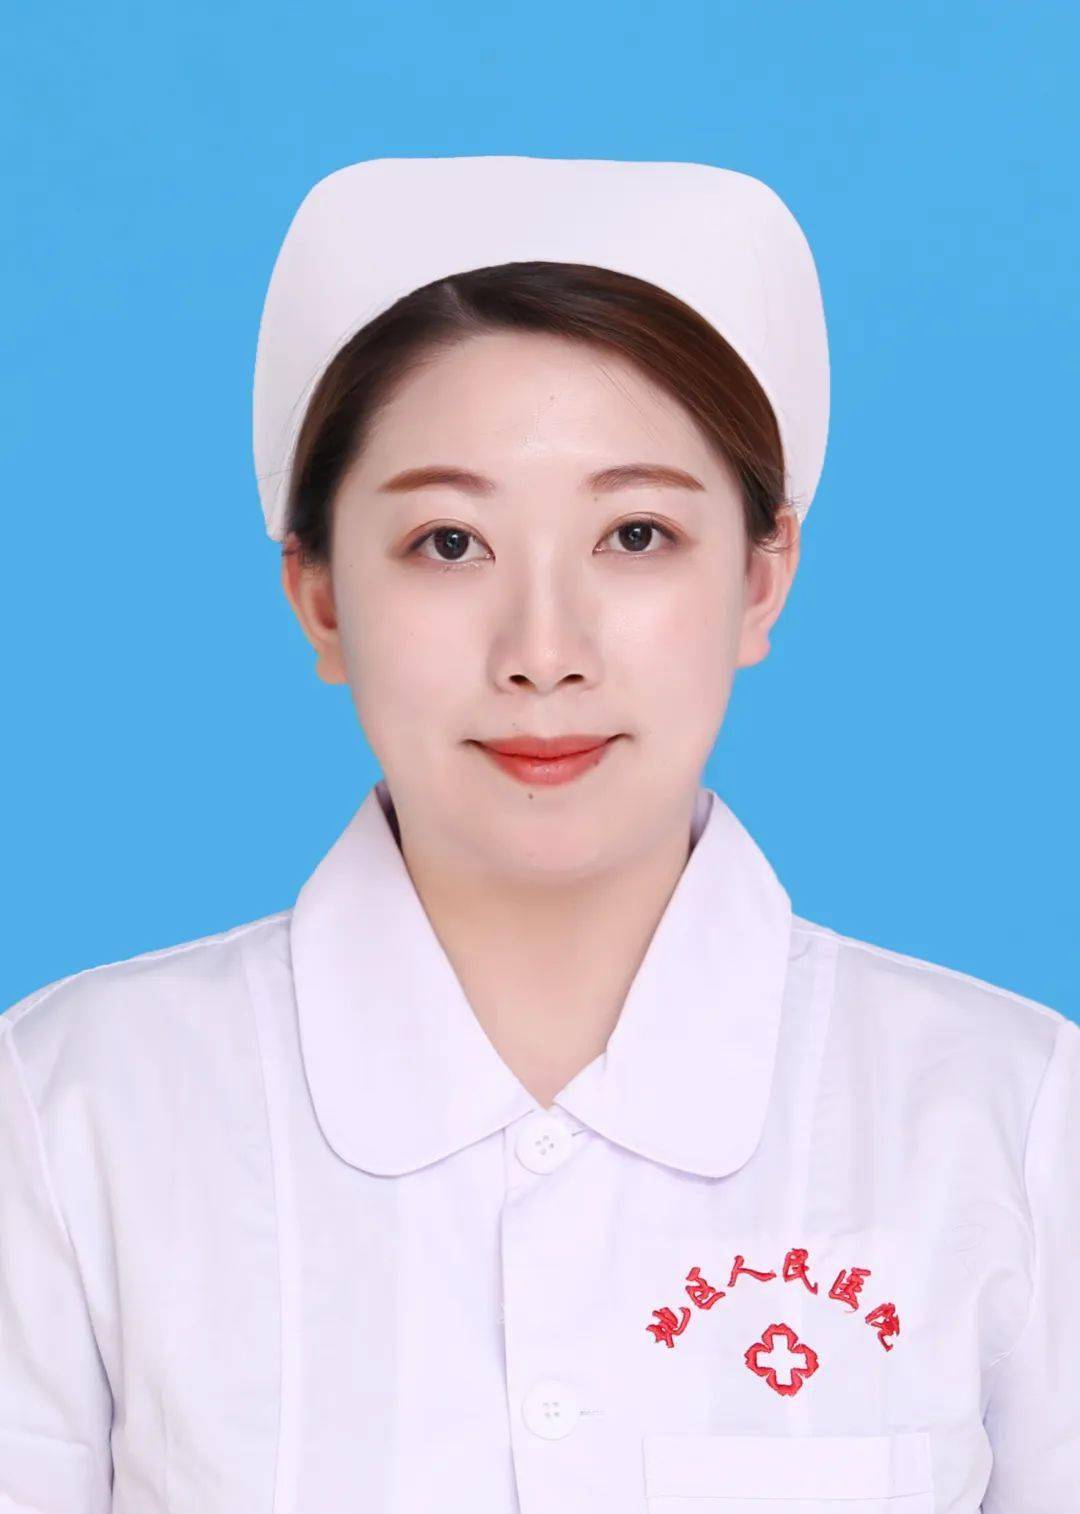 12国际护士节,第八届最美护士评选活动拉开帷幕